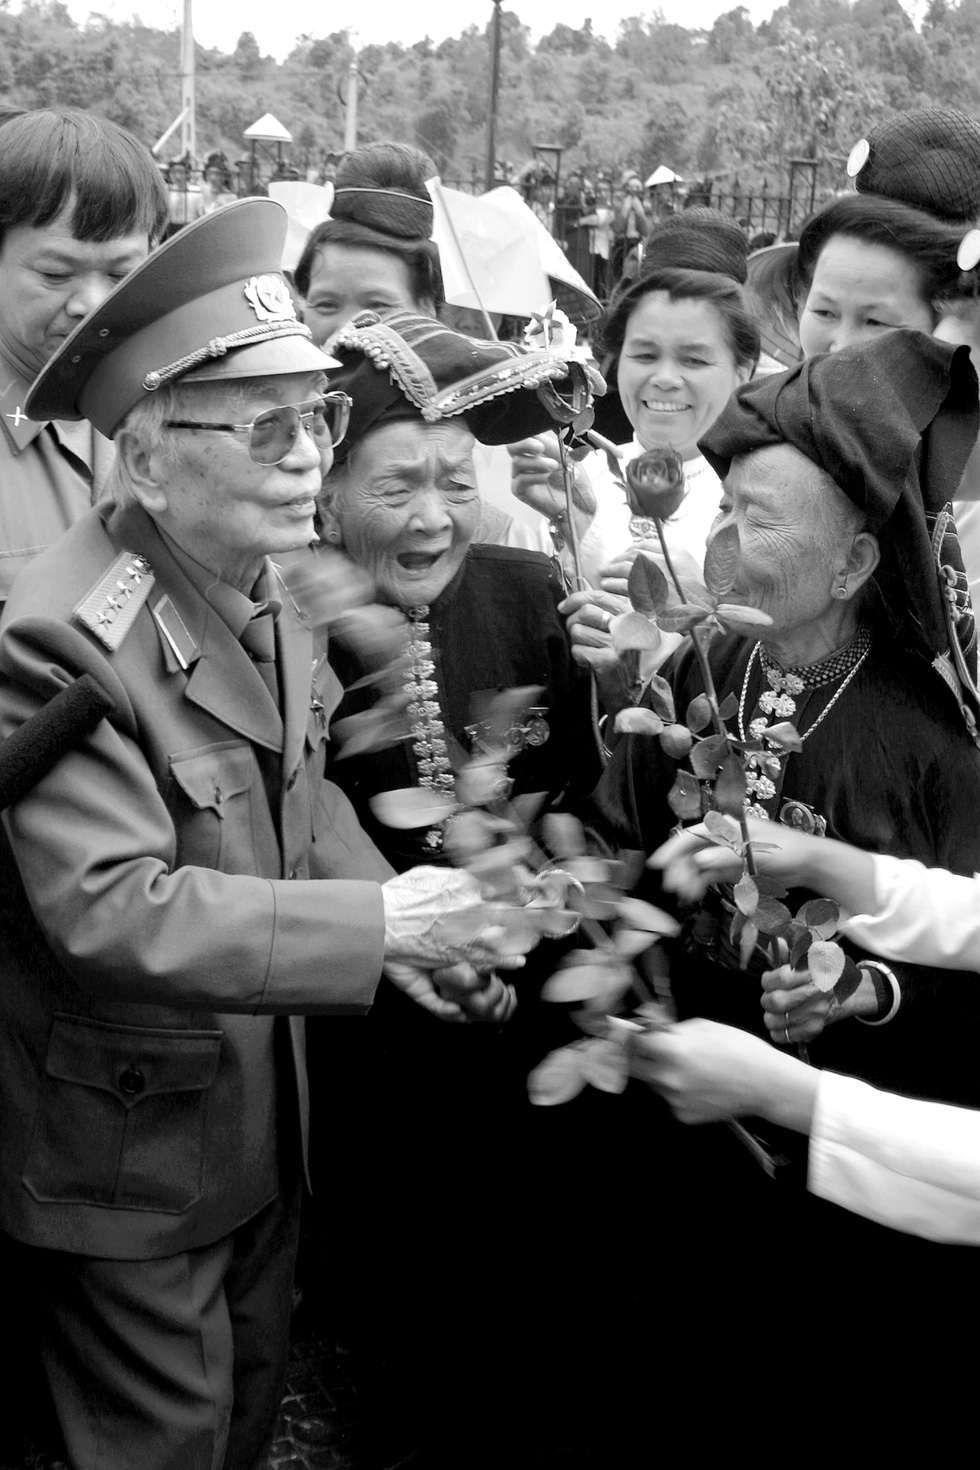 Đại tướng Võ Nguyên Giáp với đồng bào Mường Phăng ngày 19-4-2004 - Ảnh: NGUYỄN ĐÌNH TOÁN